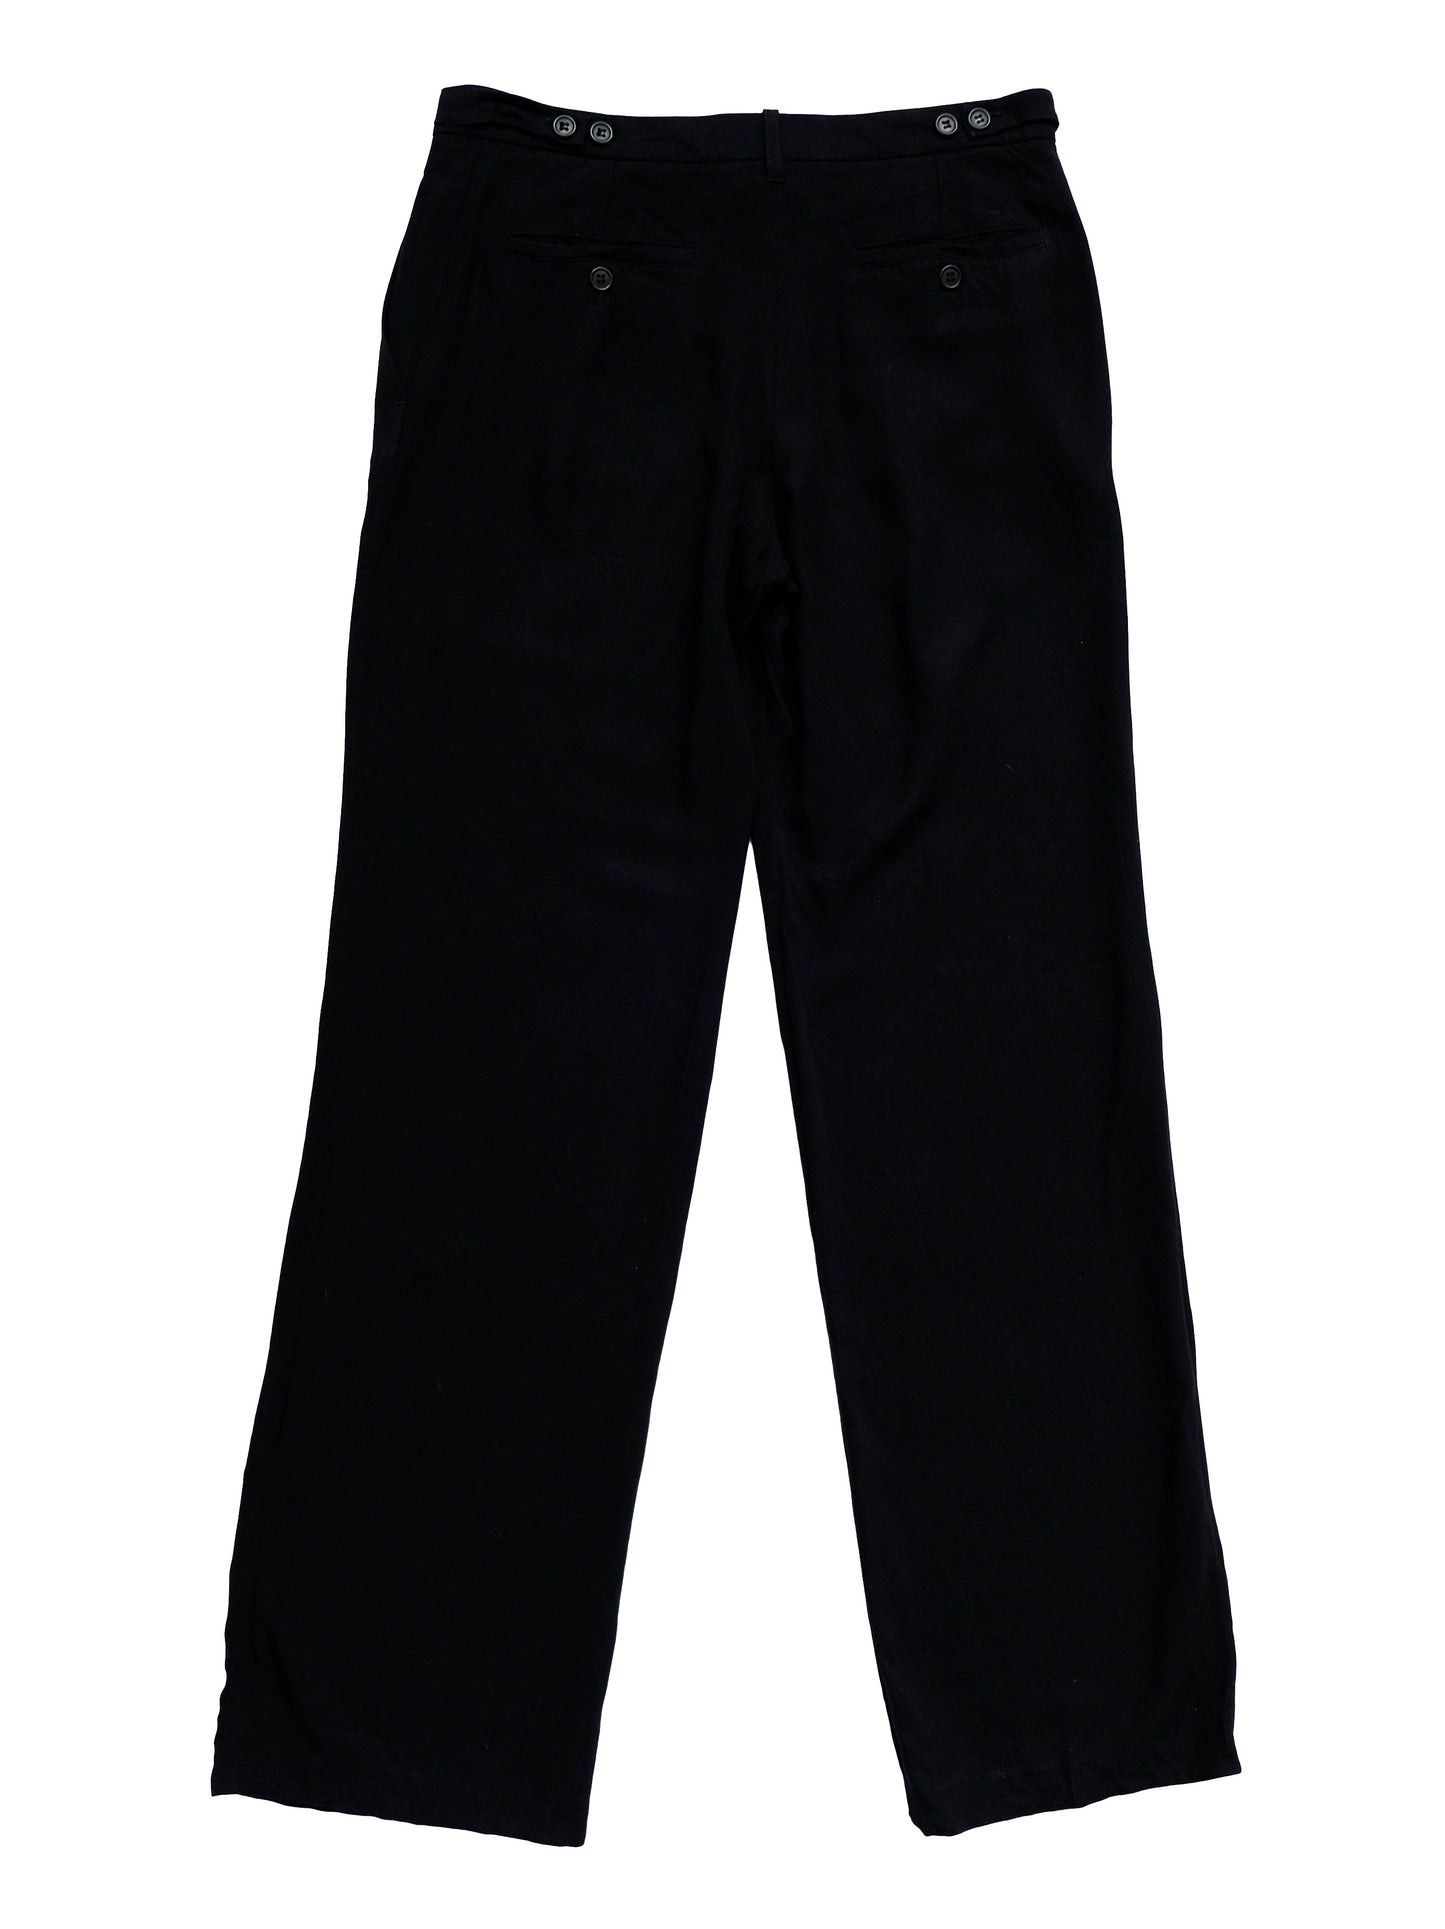 Ann Demeulemeester 1990s Vintage Minimalist Black Trousers, UK10